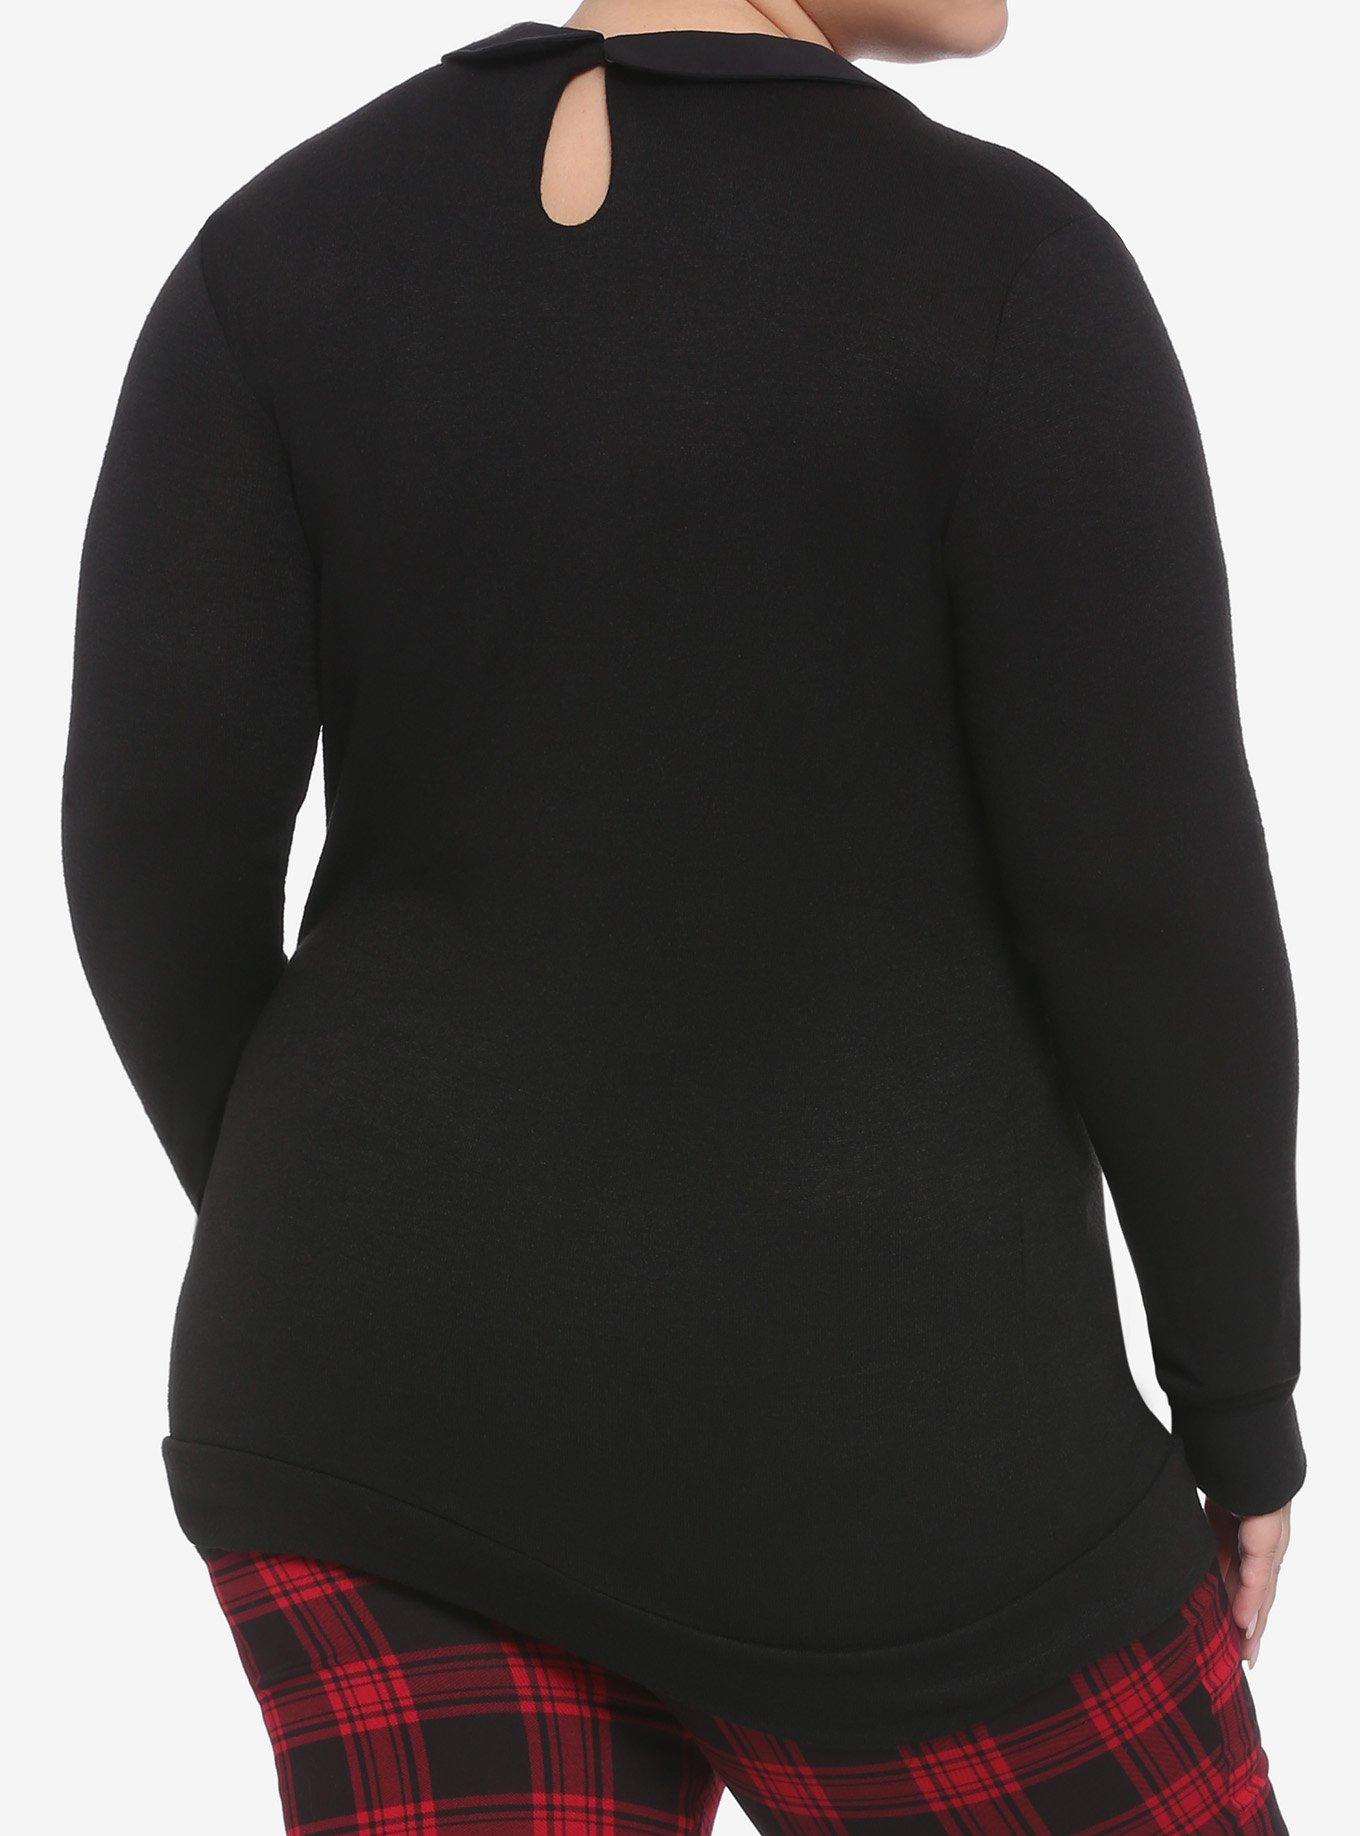 Collared Skeleton Girls Sweater Plus Size, BLACK, alternate